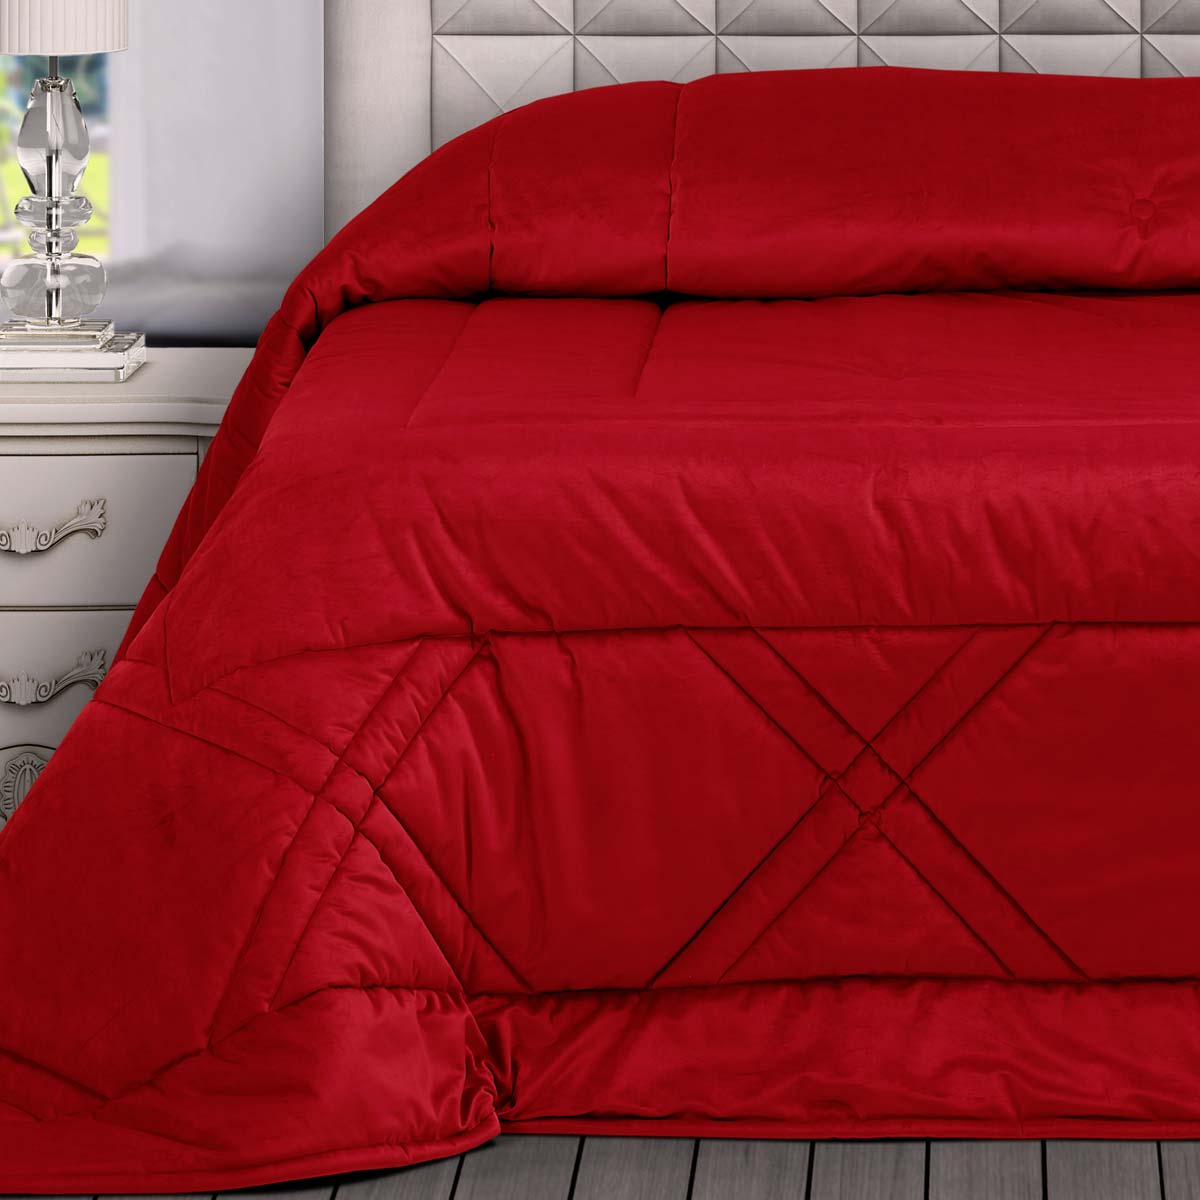 Trapunta letto matrimoniale rossa moderna in velluto con disegno geometrico a rombi